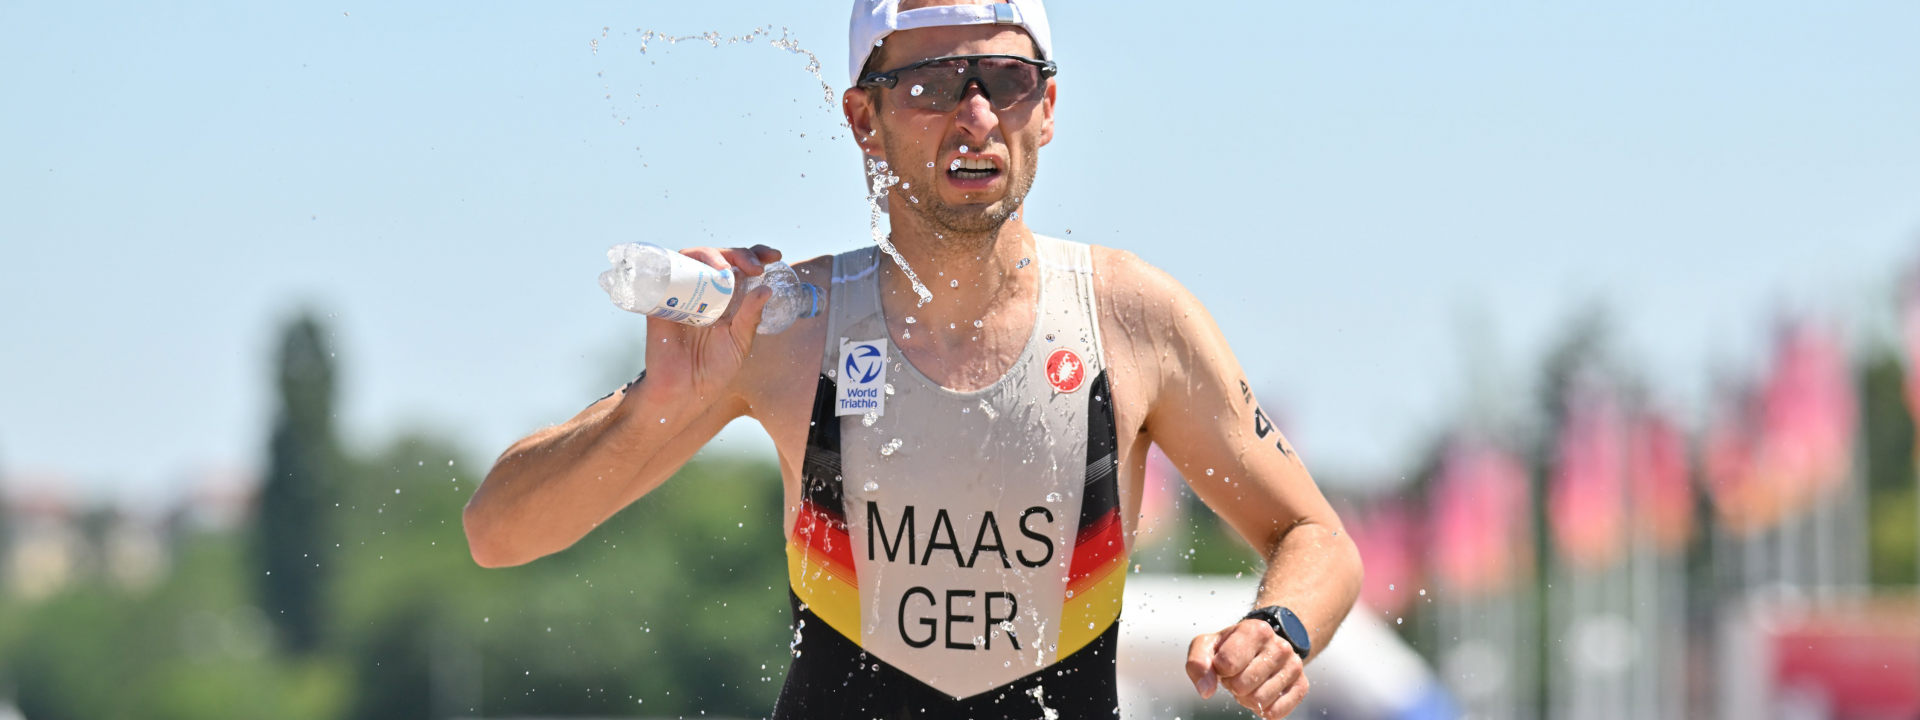 Björn Maas schüttet Wasser beim Laufen über sich!